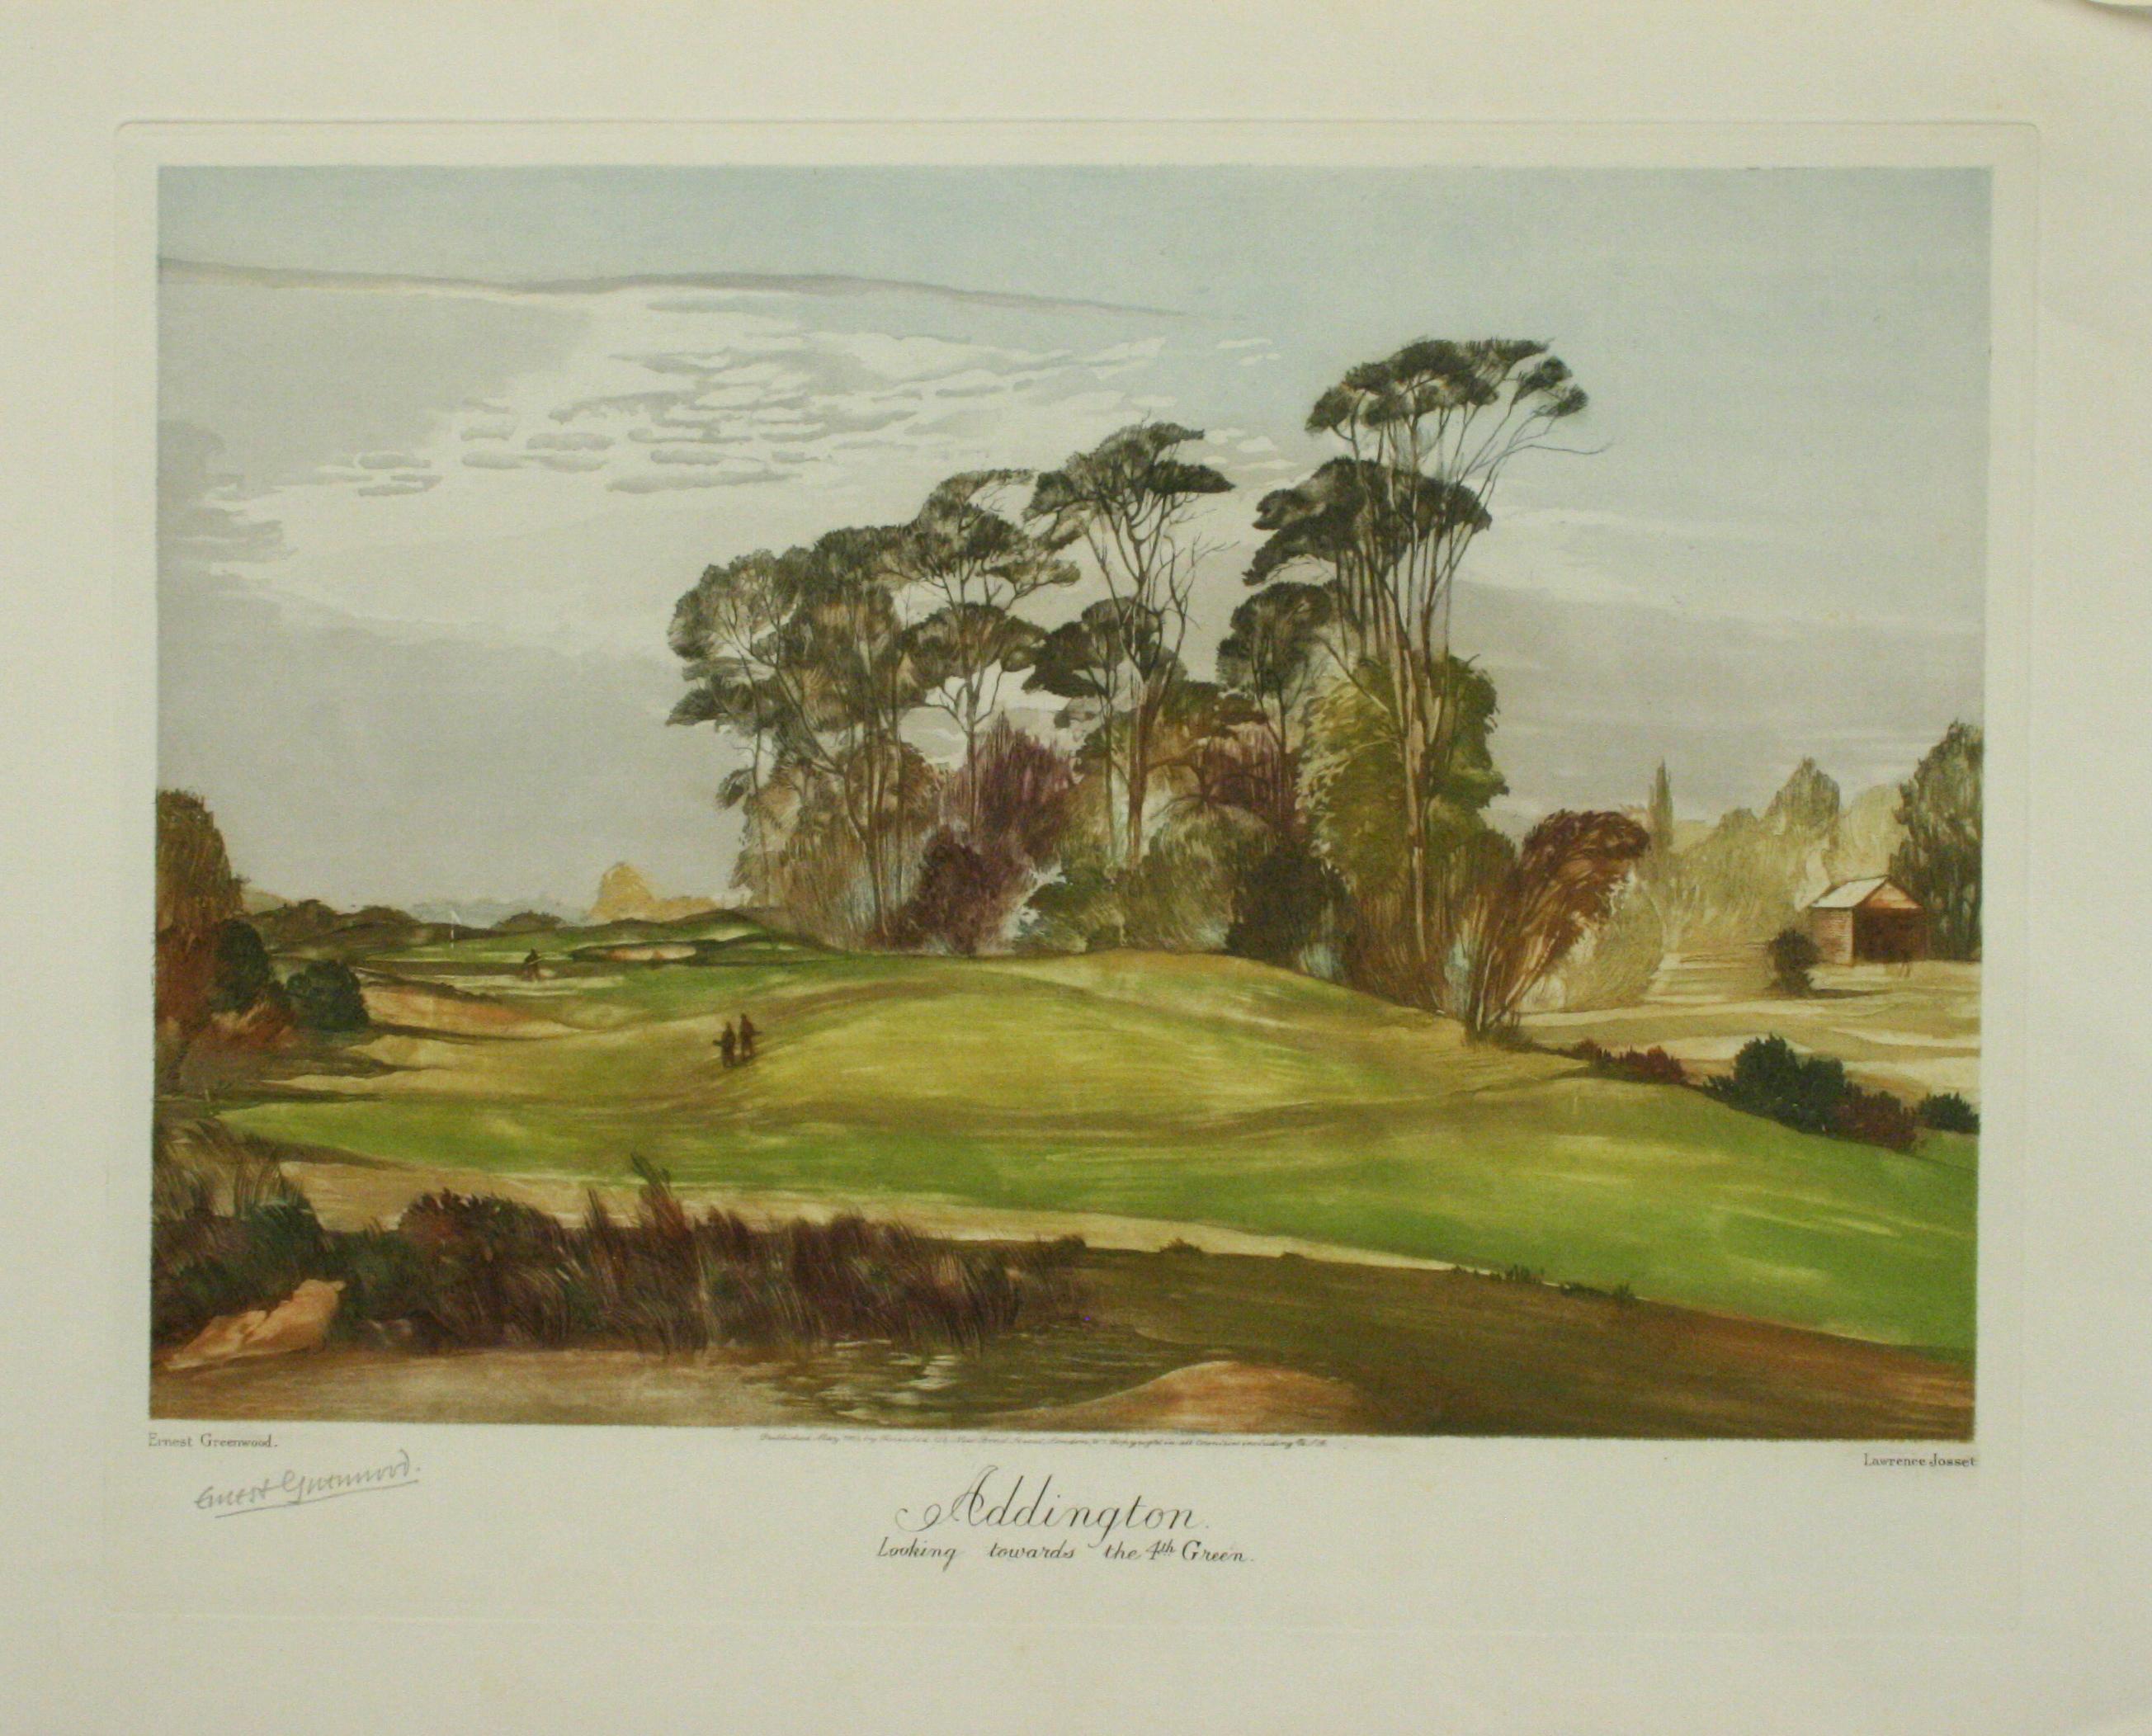 Sporting Art Addington Golf Club, Towards 4th Green, Ernest Greenwood